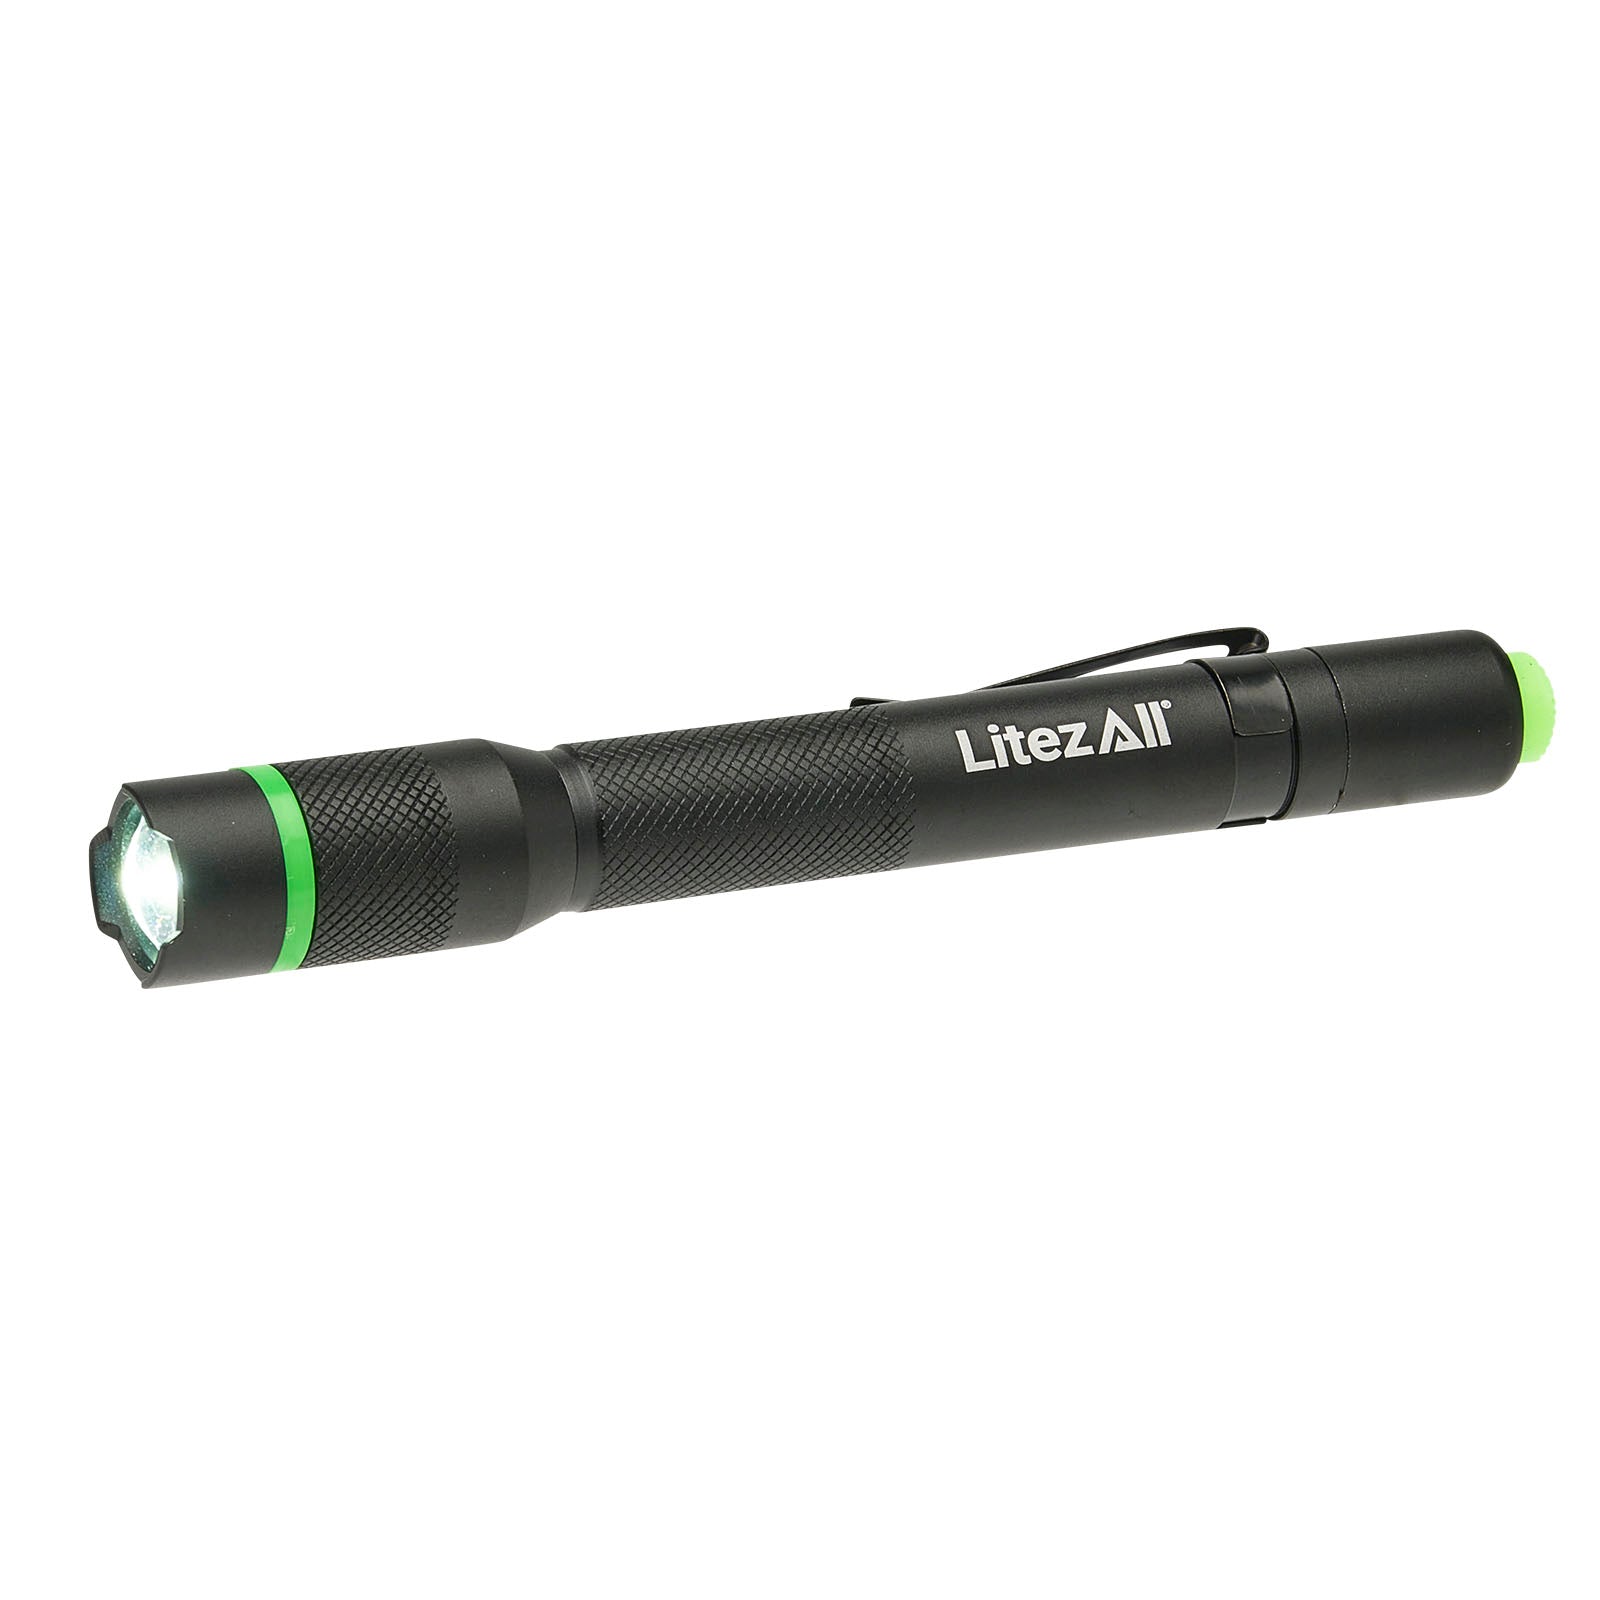 LitezAll 250 Lumen Pen Light - LitezAll - Pen Light - 14